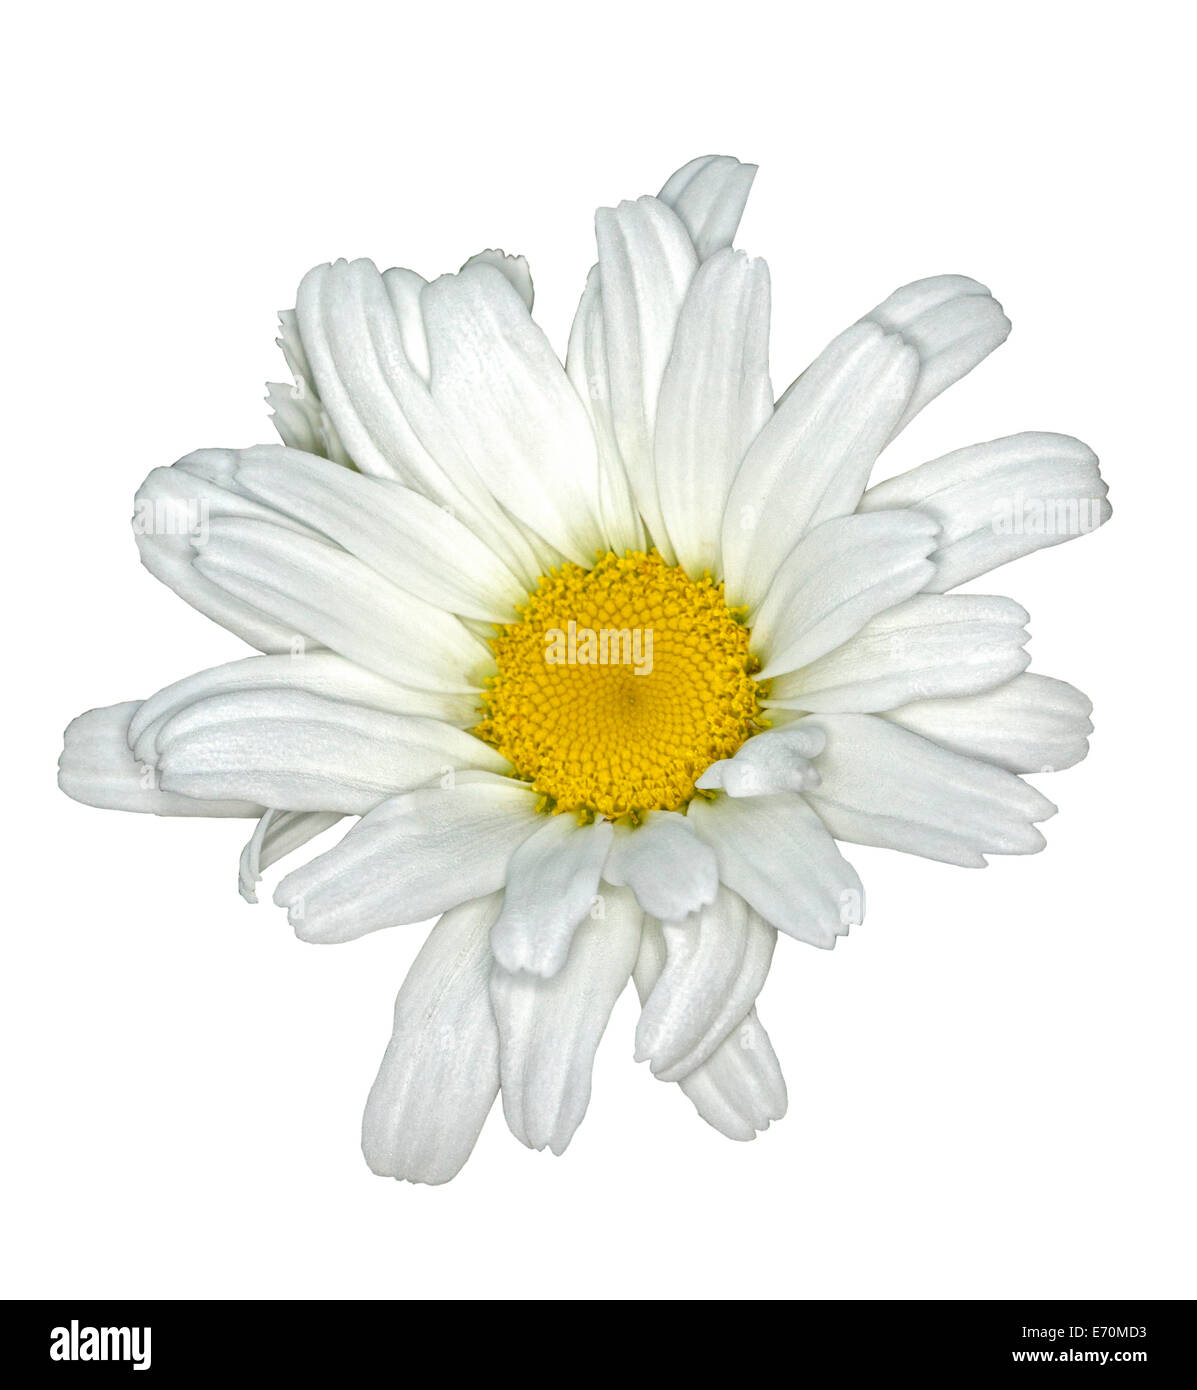 Fiori bianchi di Leucanthemun "Daisy può' - Shasta Daisy con centro giallo contro sfondo bianco Foto Stock